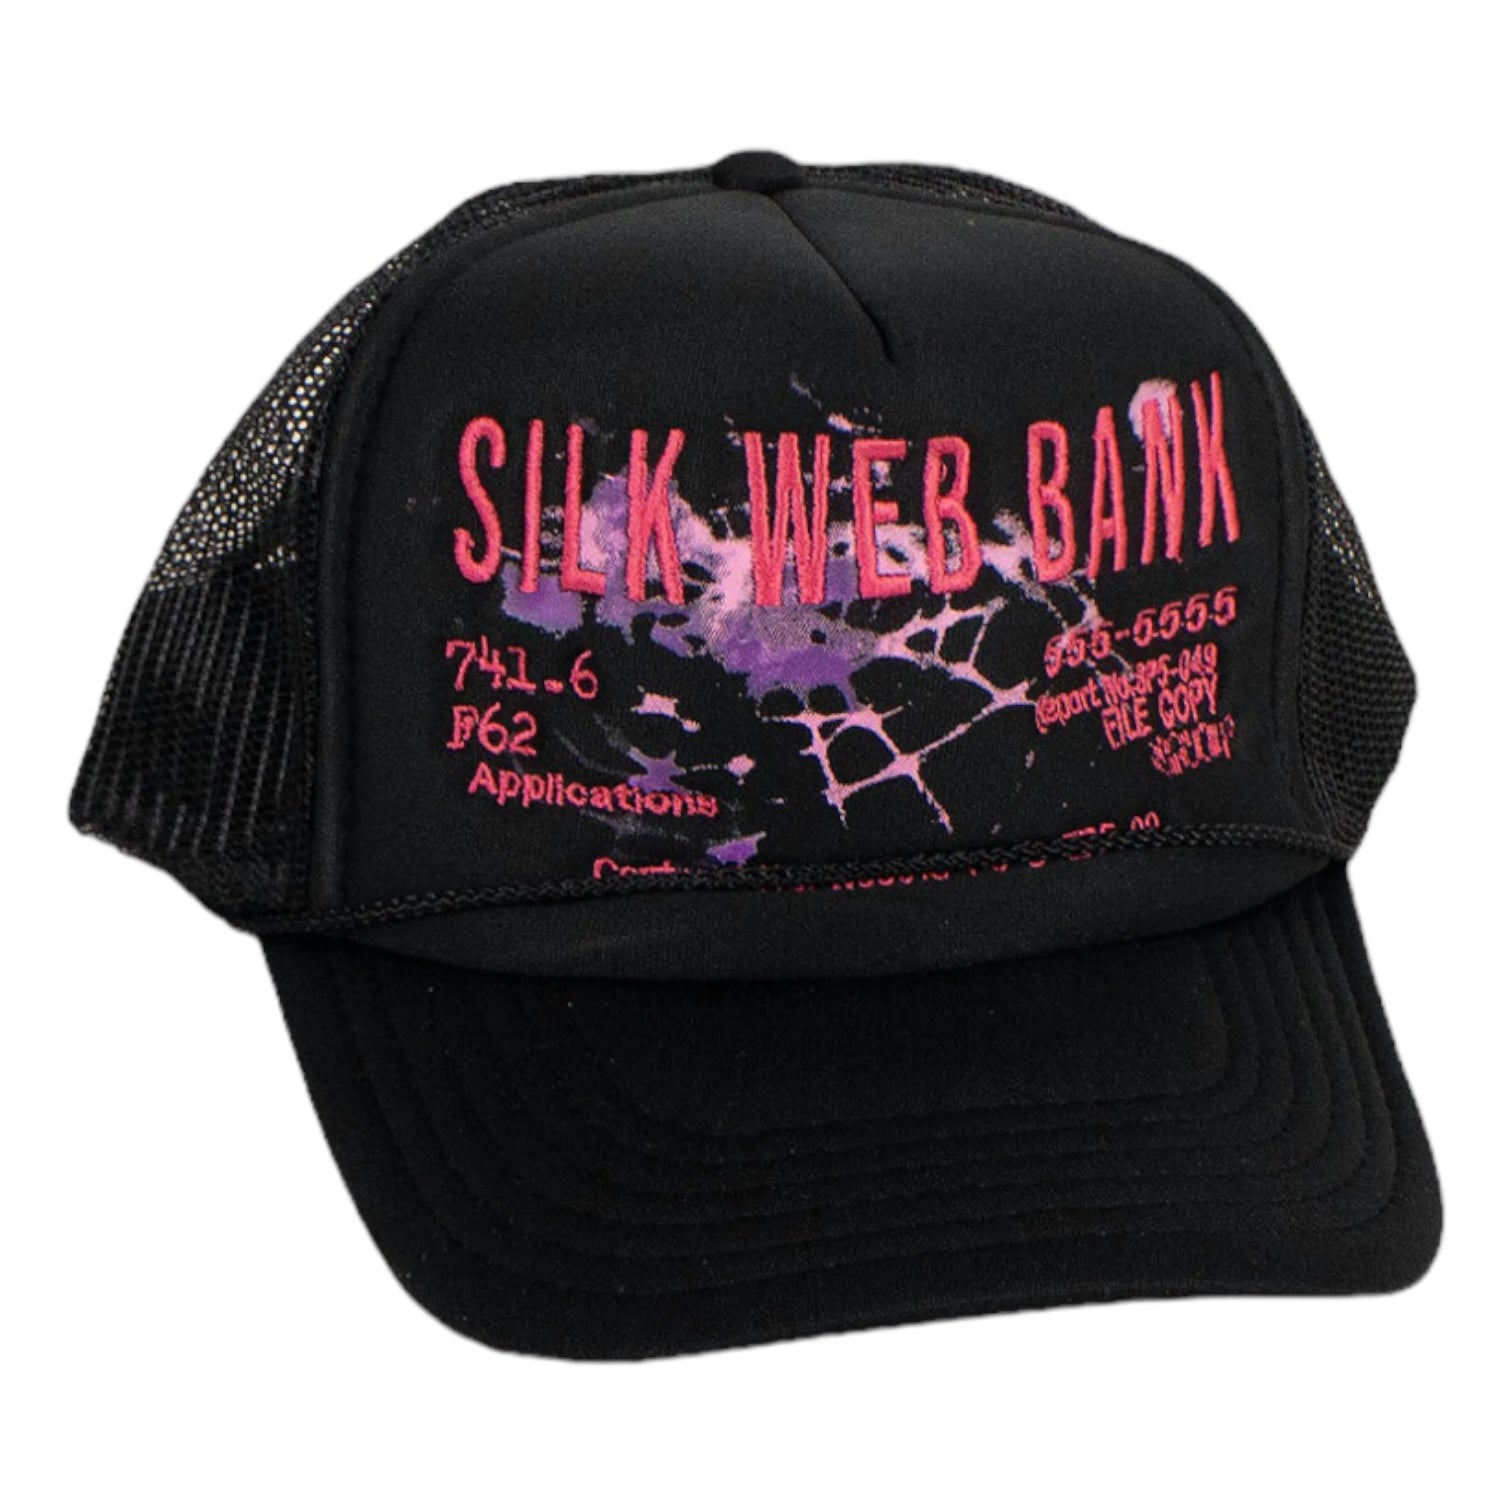 Sp5der Silk Web Bank Trucker Hat Black